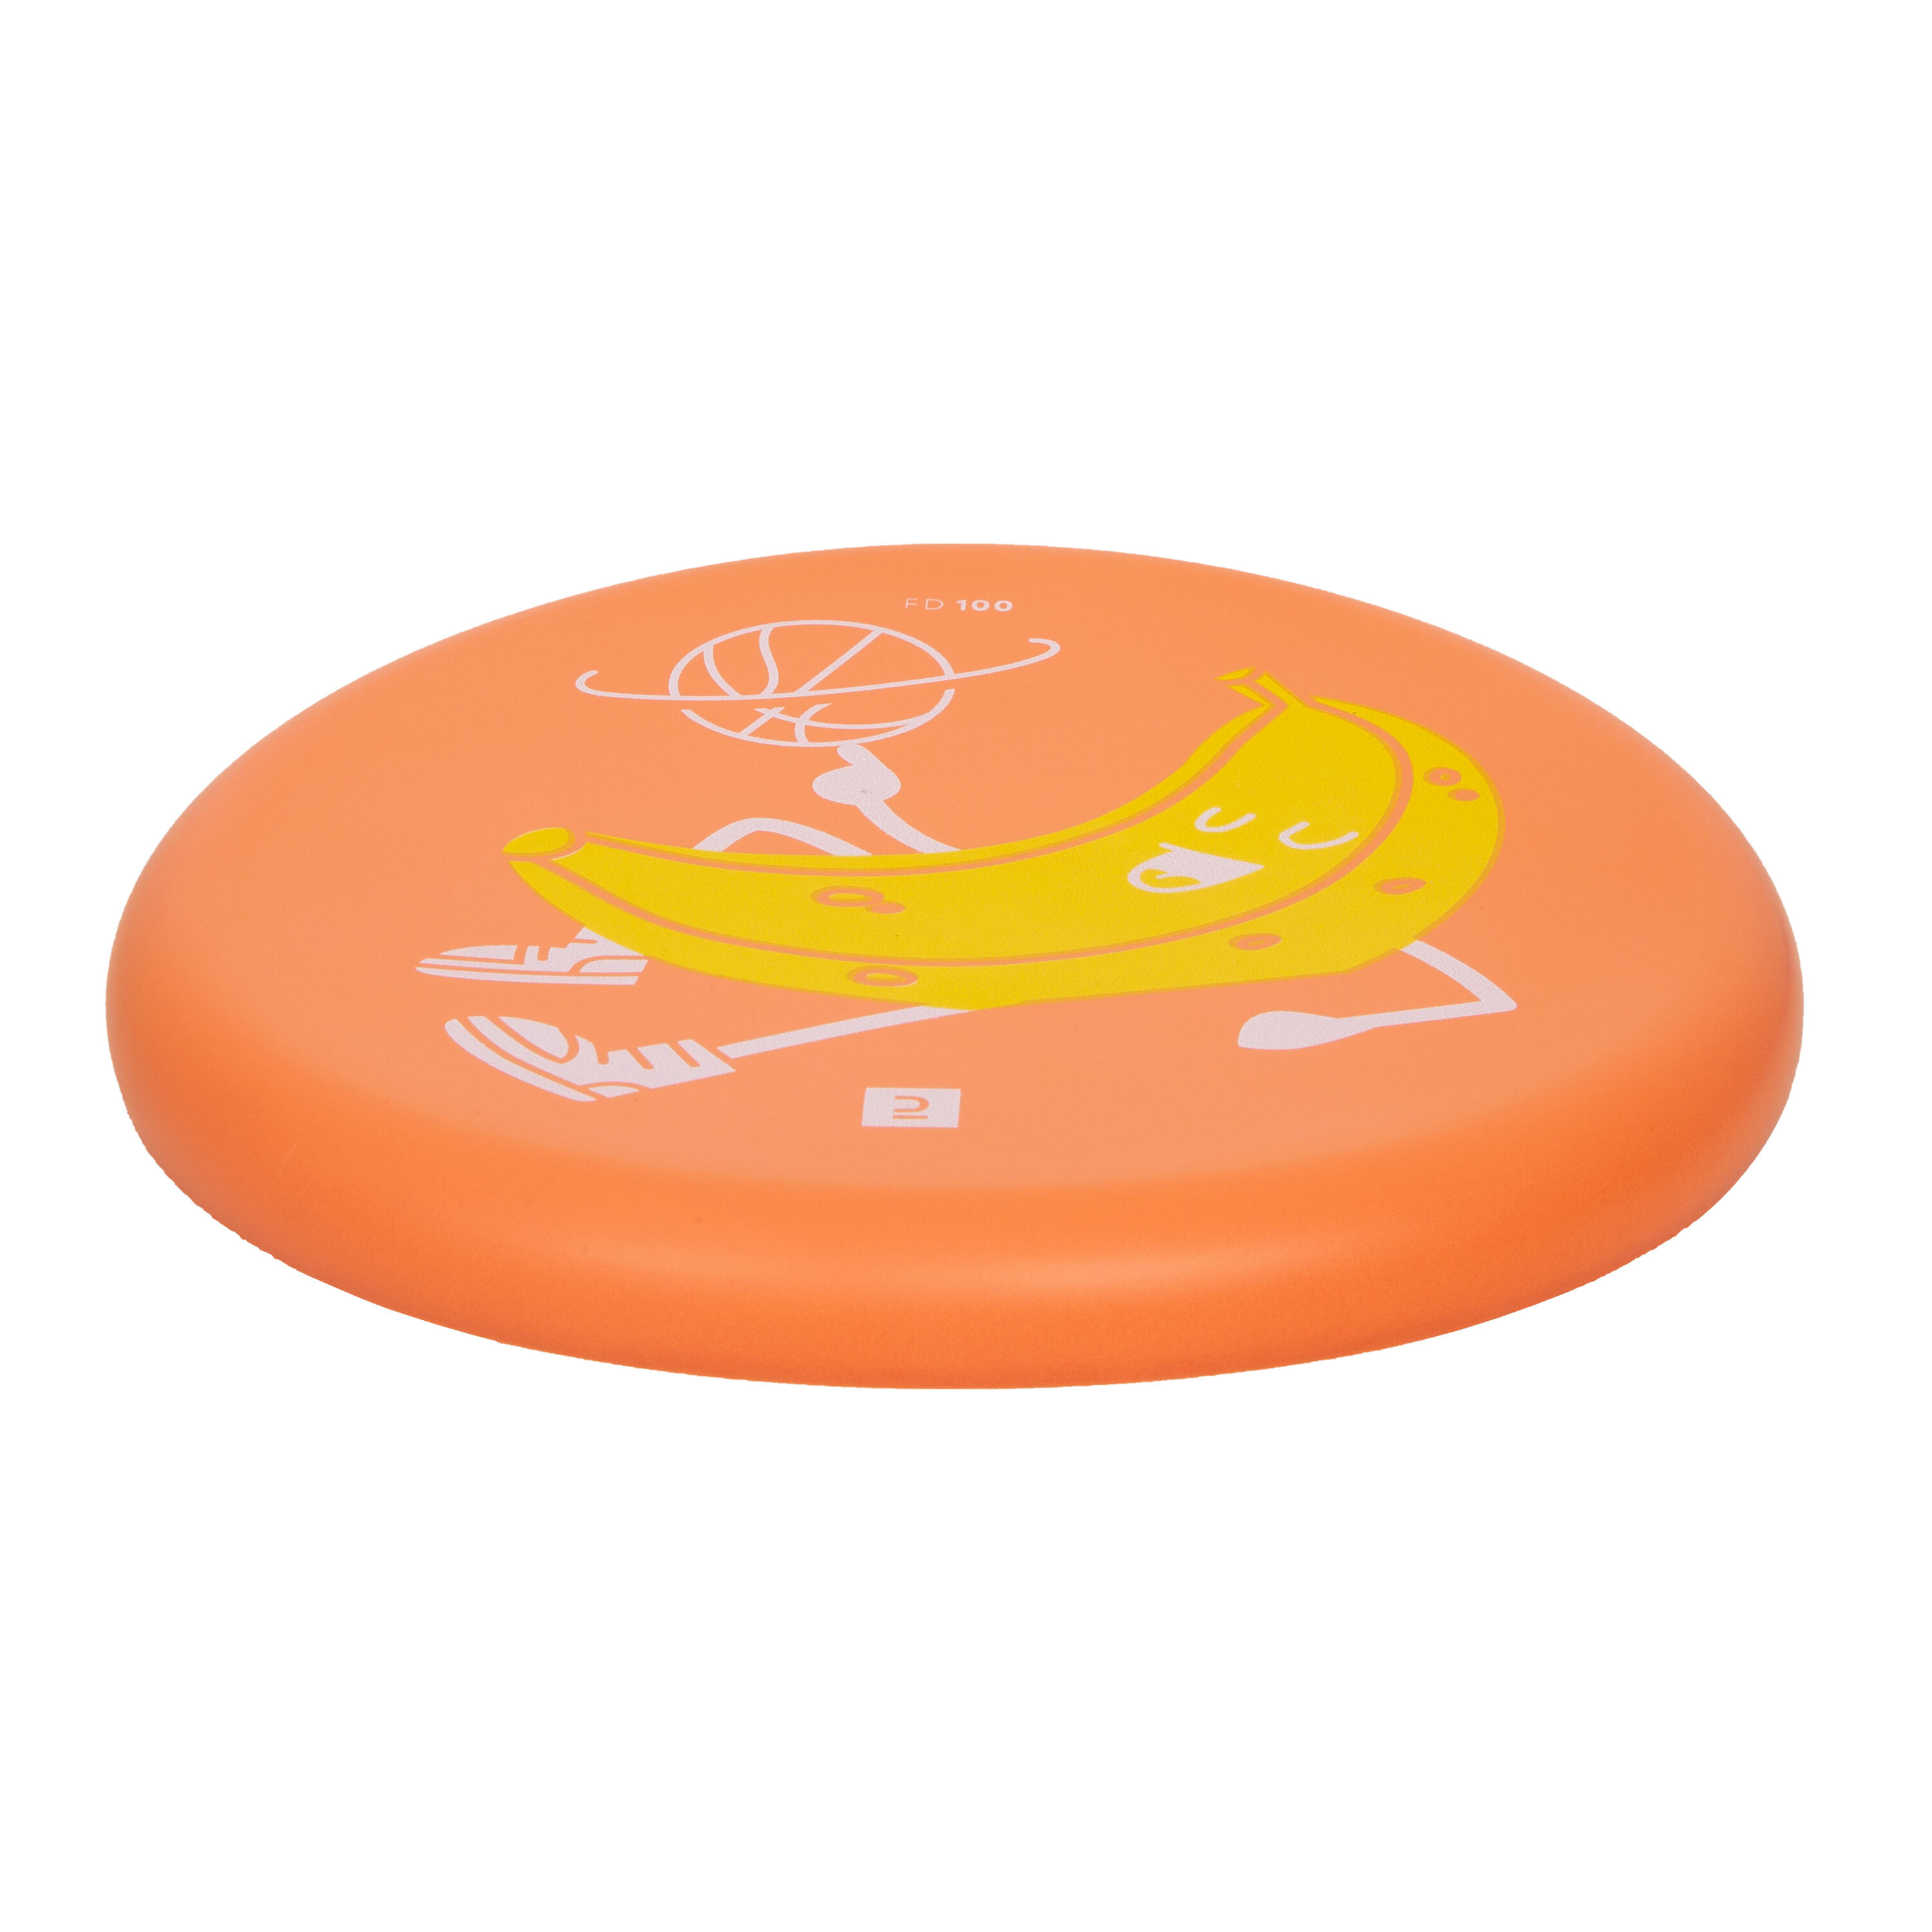 Disque volant souple - DSoft 100 Orange 2/3